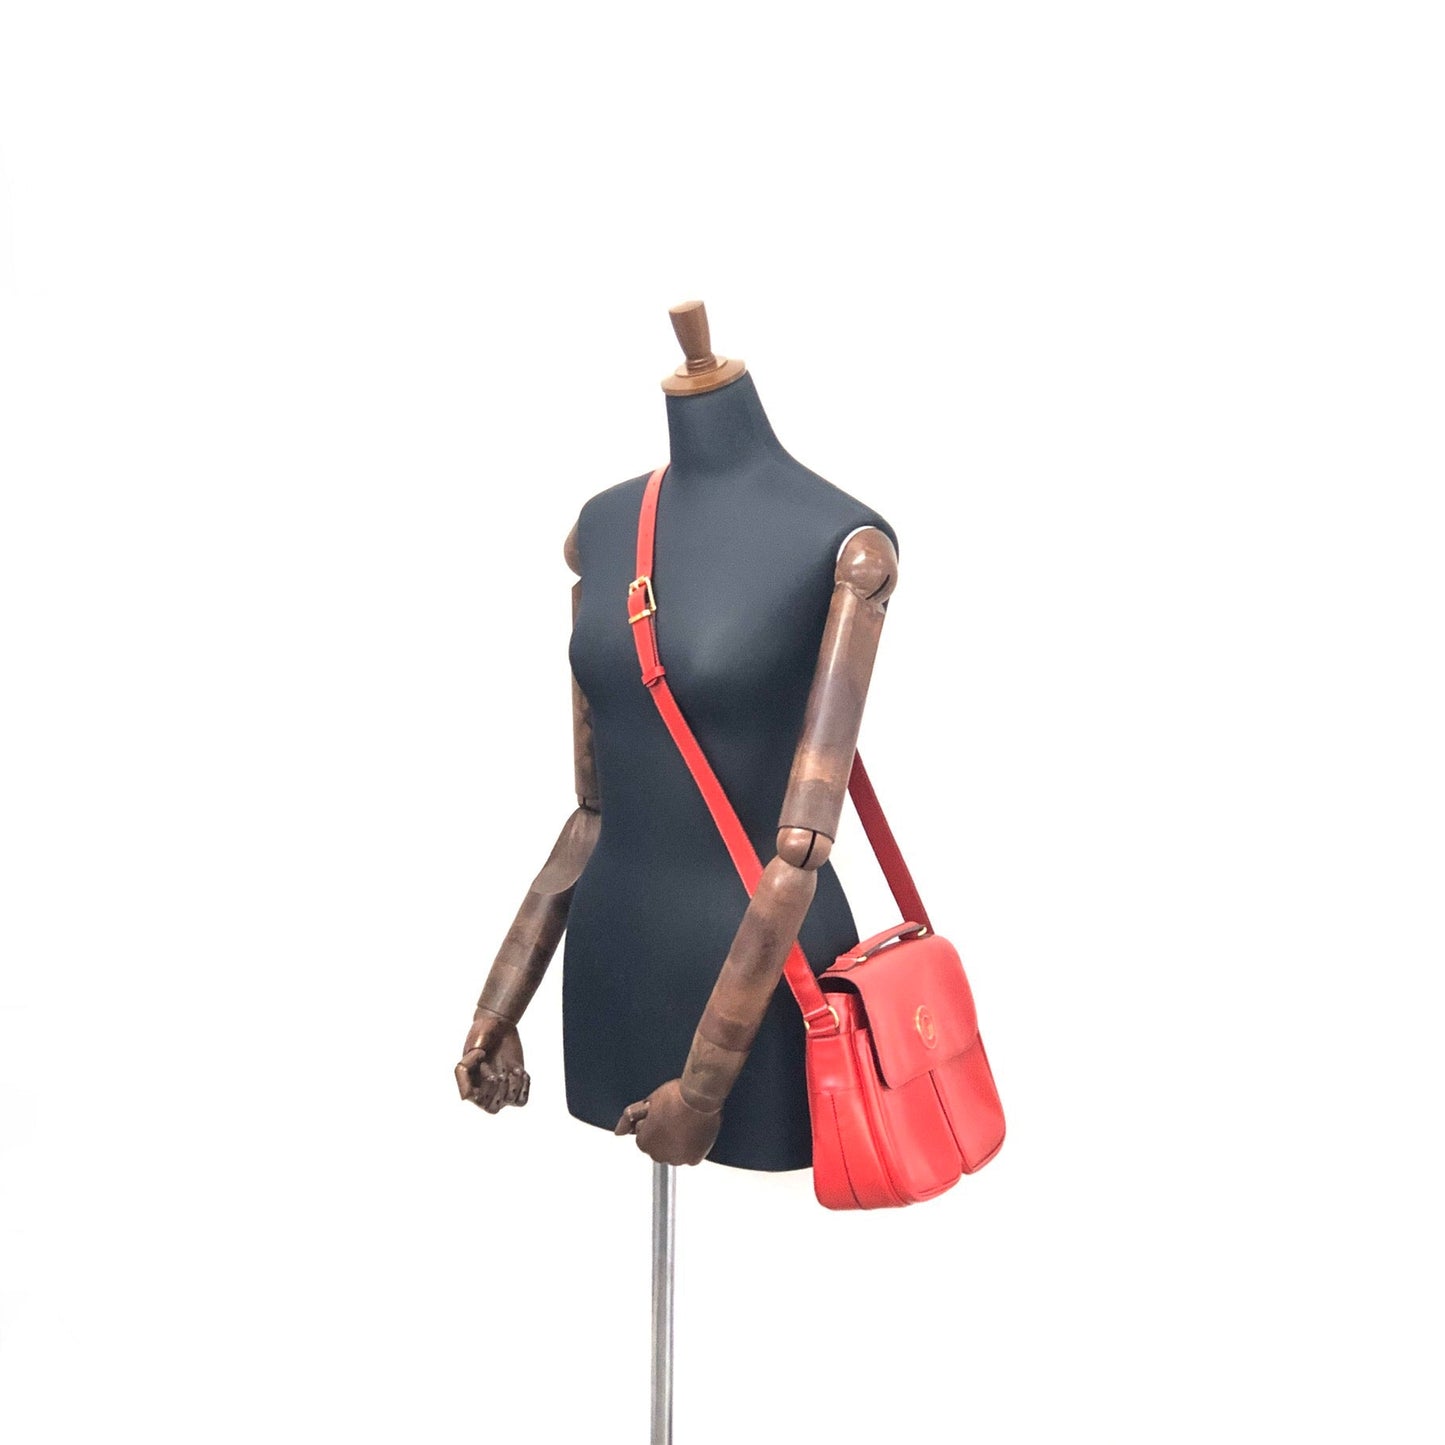 CELINE Rogo Motif embossed leather 2way double pocket shoulder bag Red Vintage Old Celine rvmknd